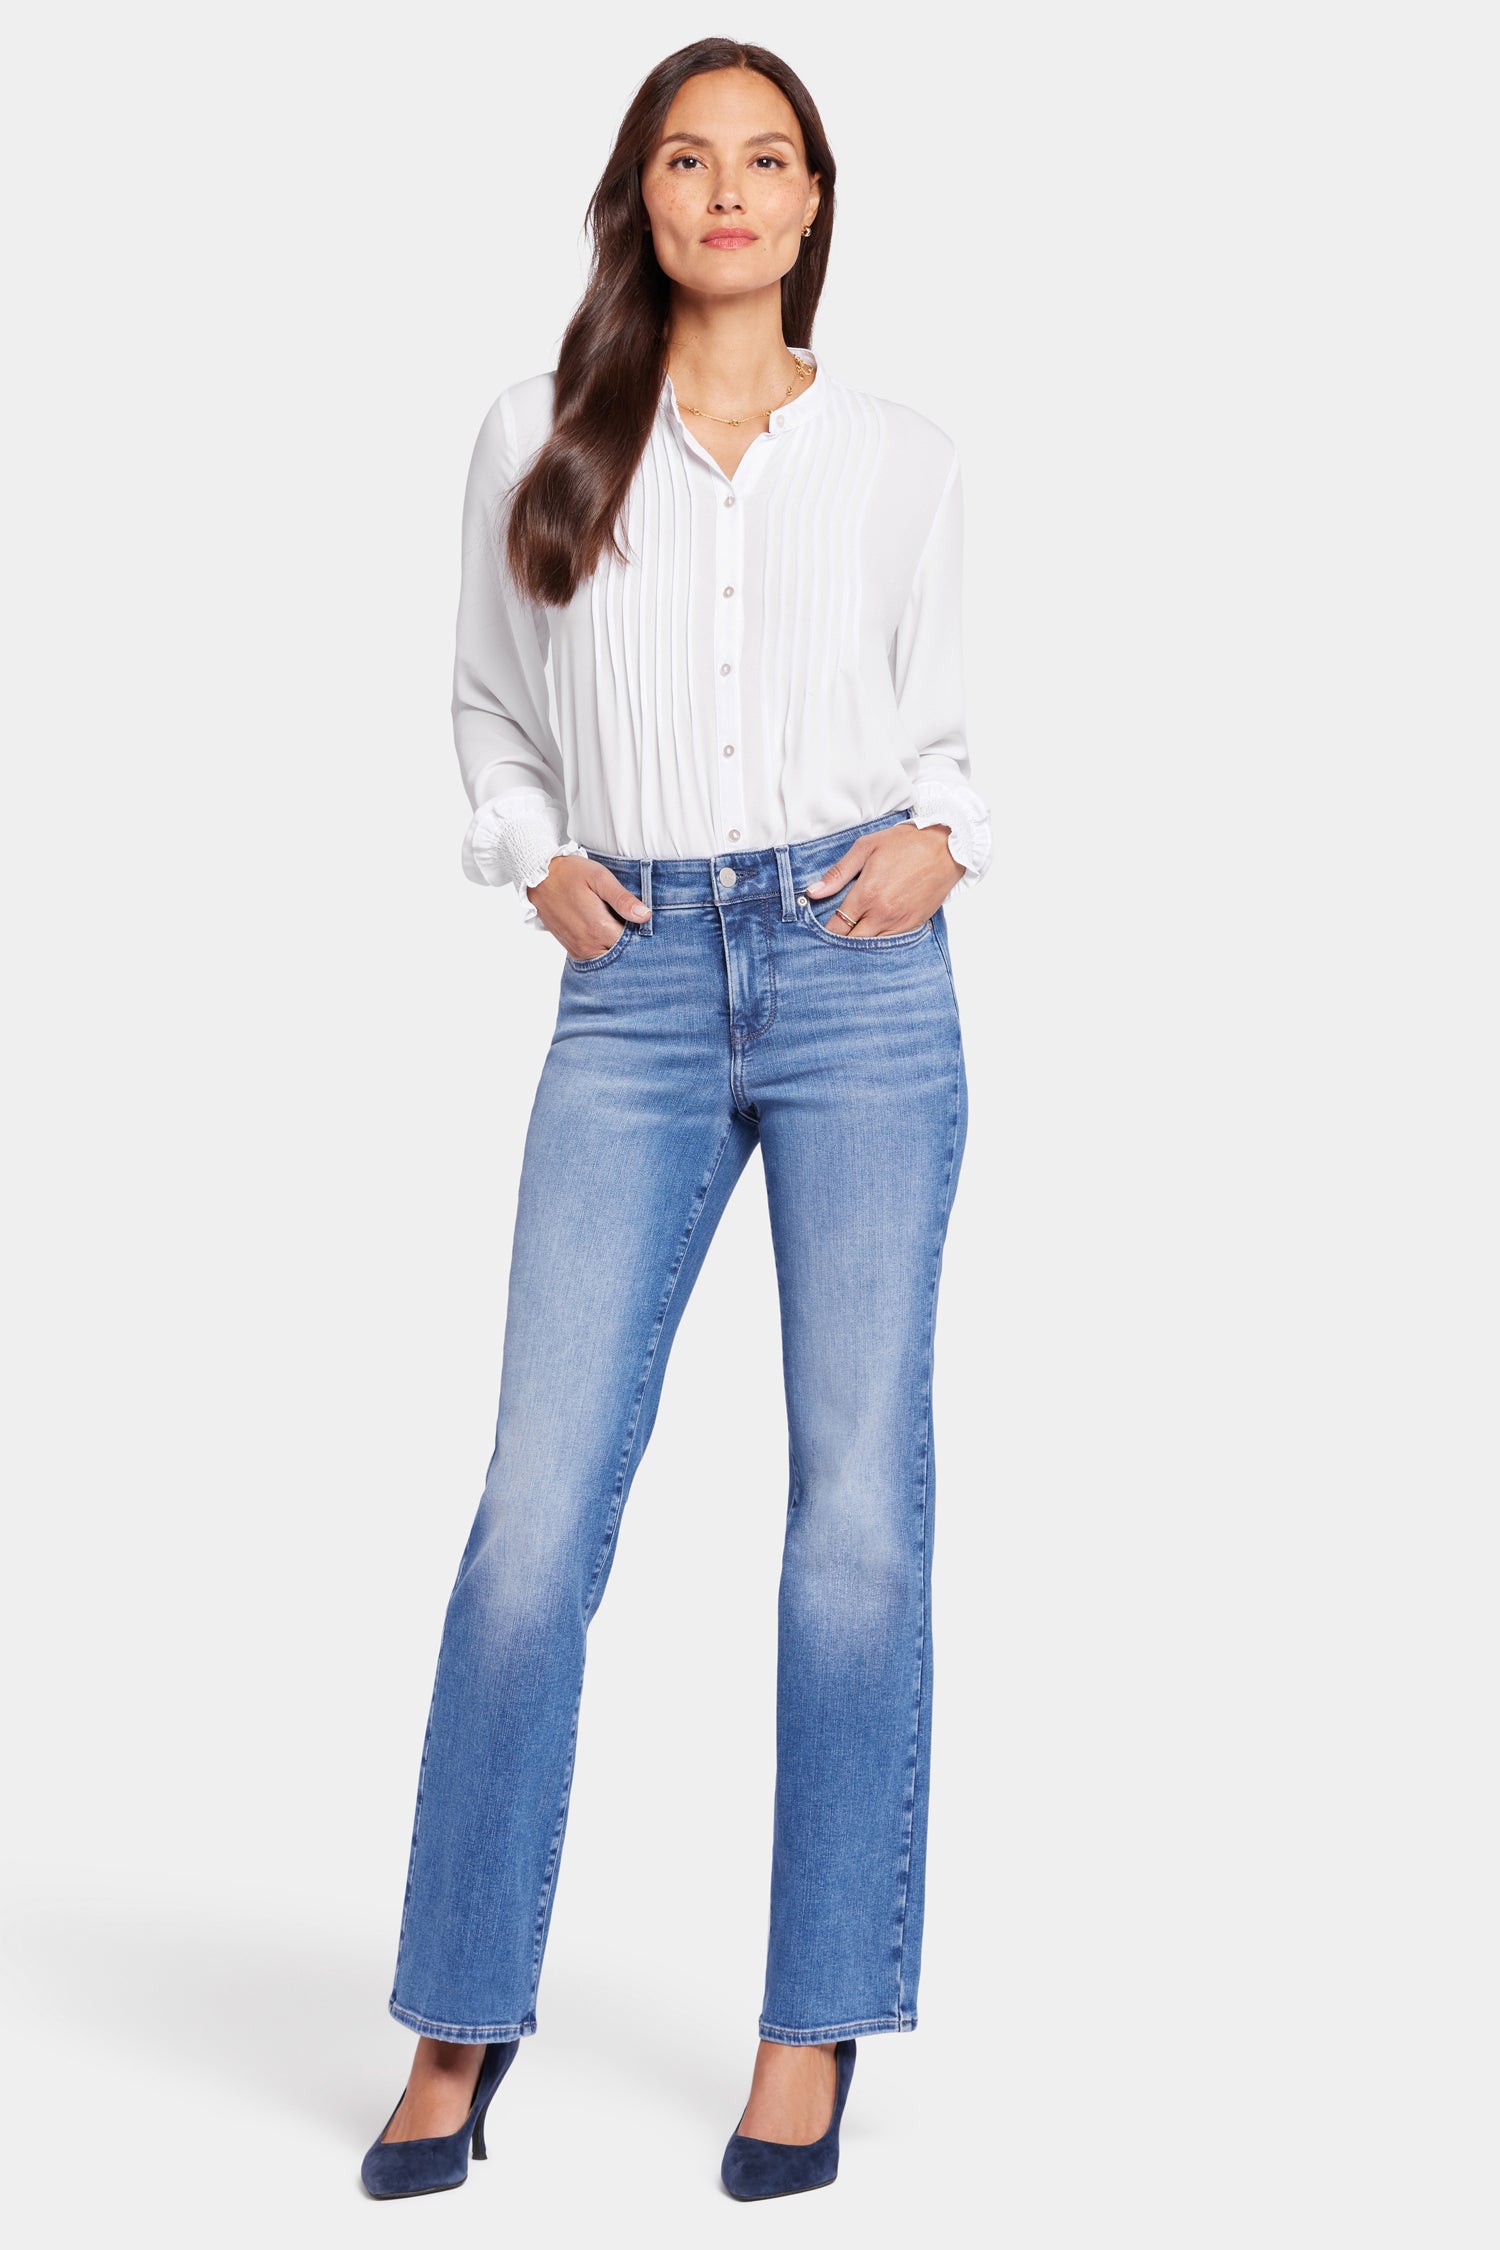 Barbara Bootcut Jeans In Petite - Cooper Blue | NYDJ